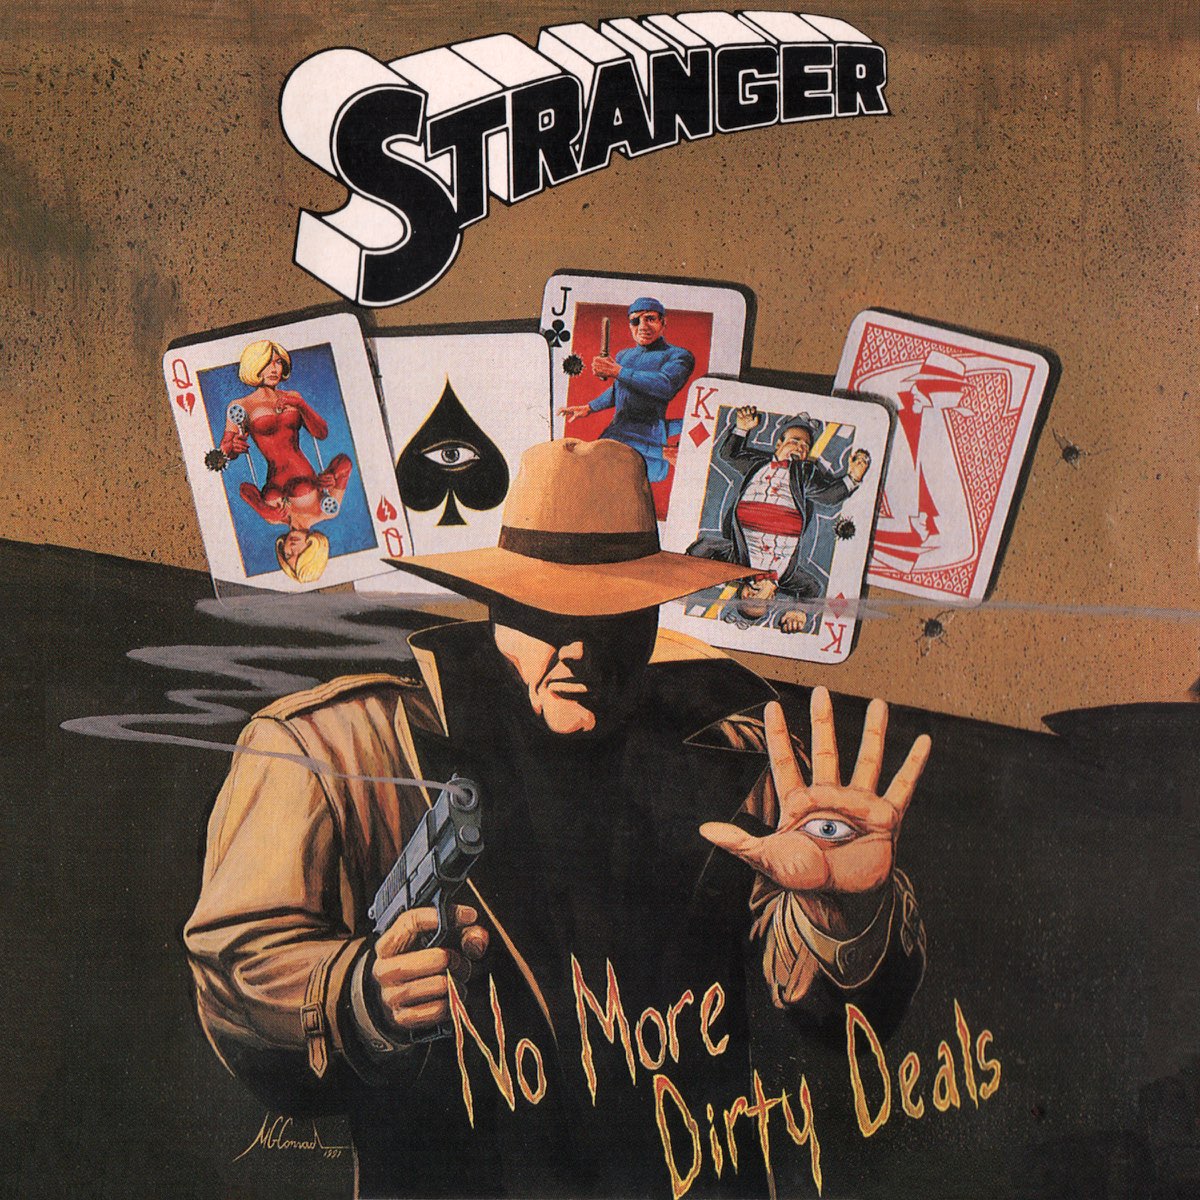 No more deals. The strangers группа. Альбом the stranger. Stranger - no more Dirty deals (1992). Рок-группа strangers know more фото.